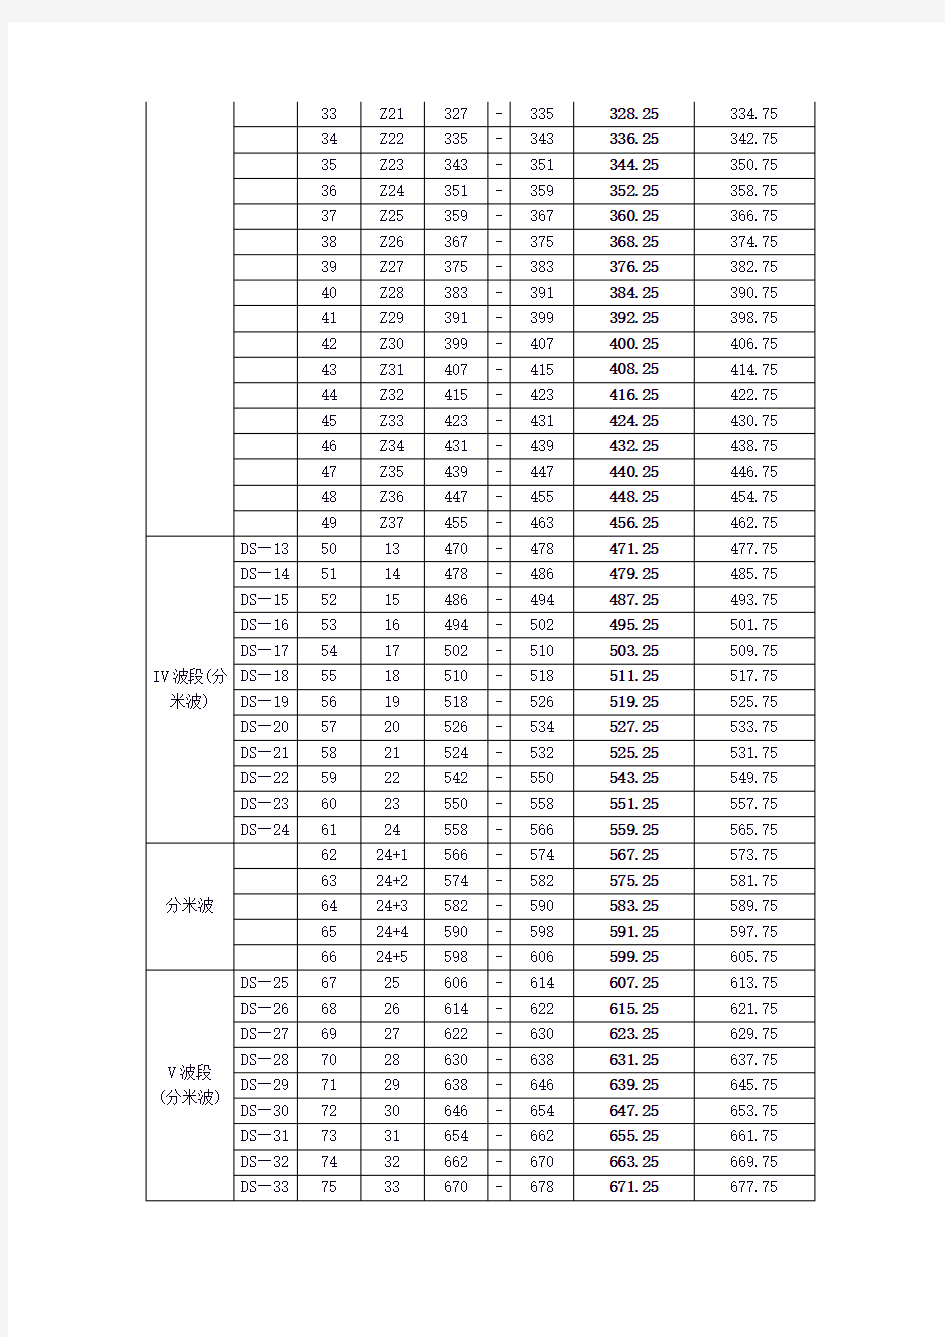 中国电视频道频率划分表